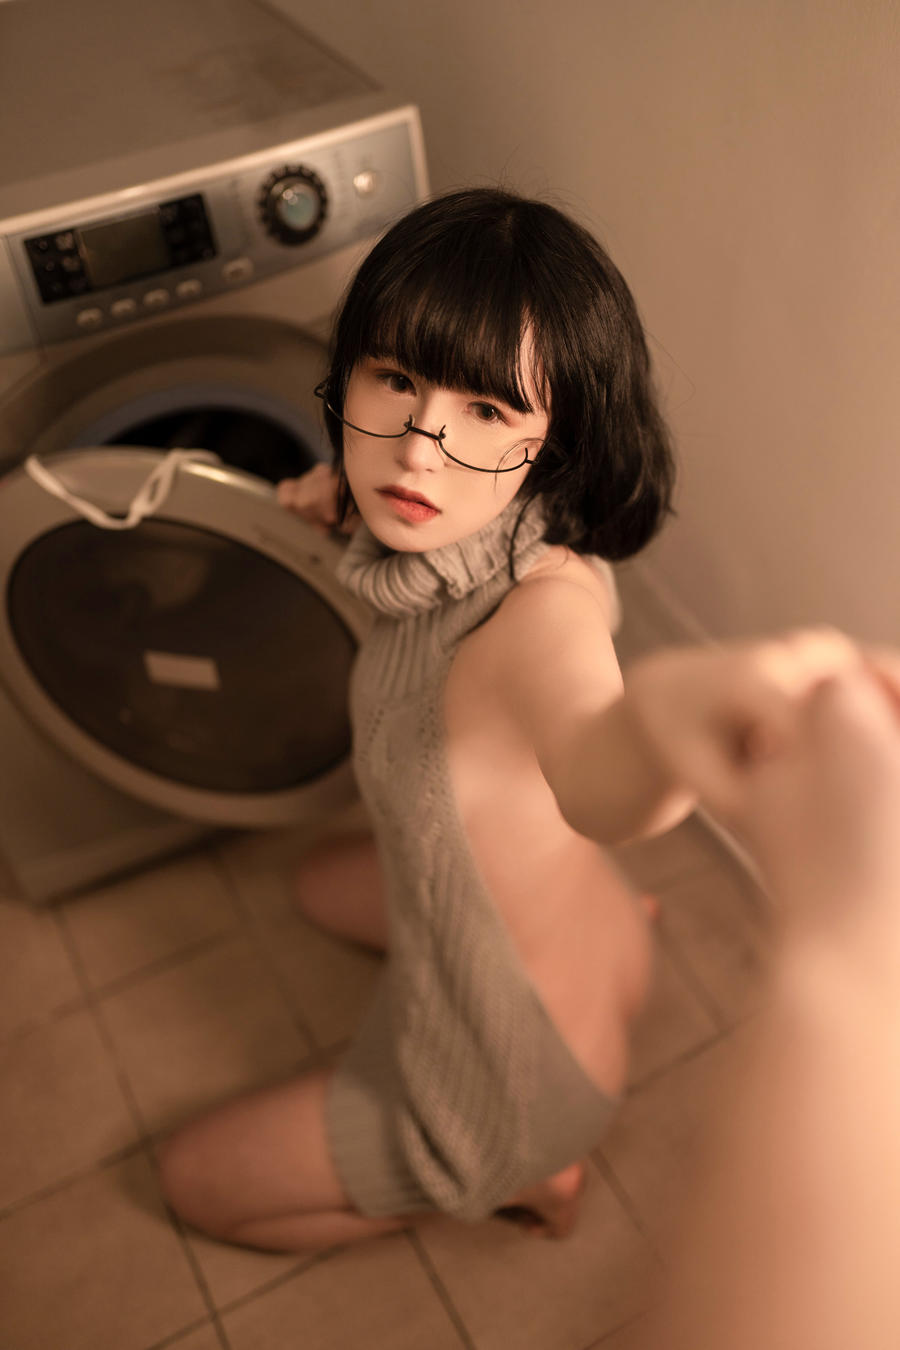 为爱发电 晕崽zz 维修洗衣机 40.jpg